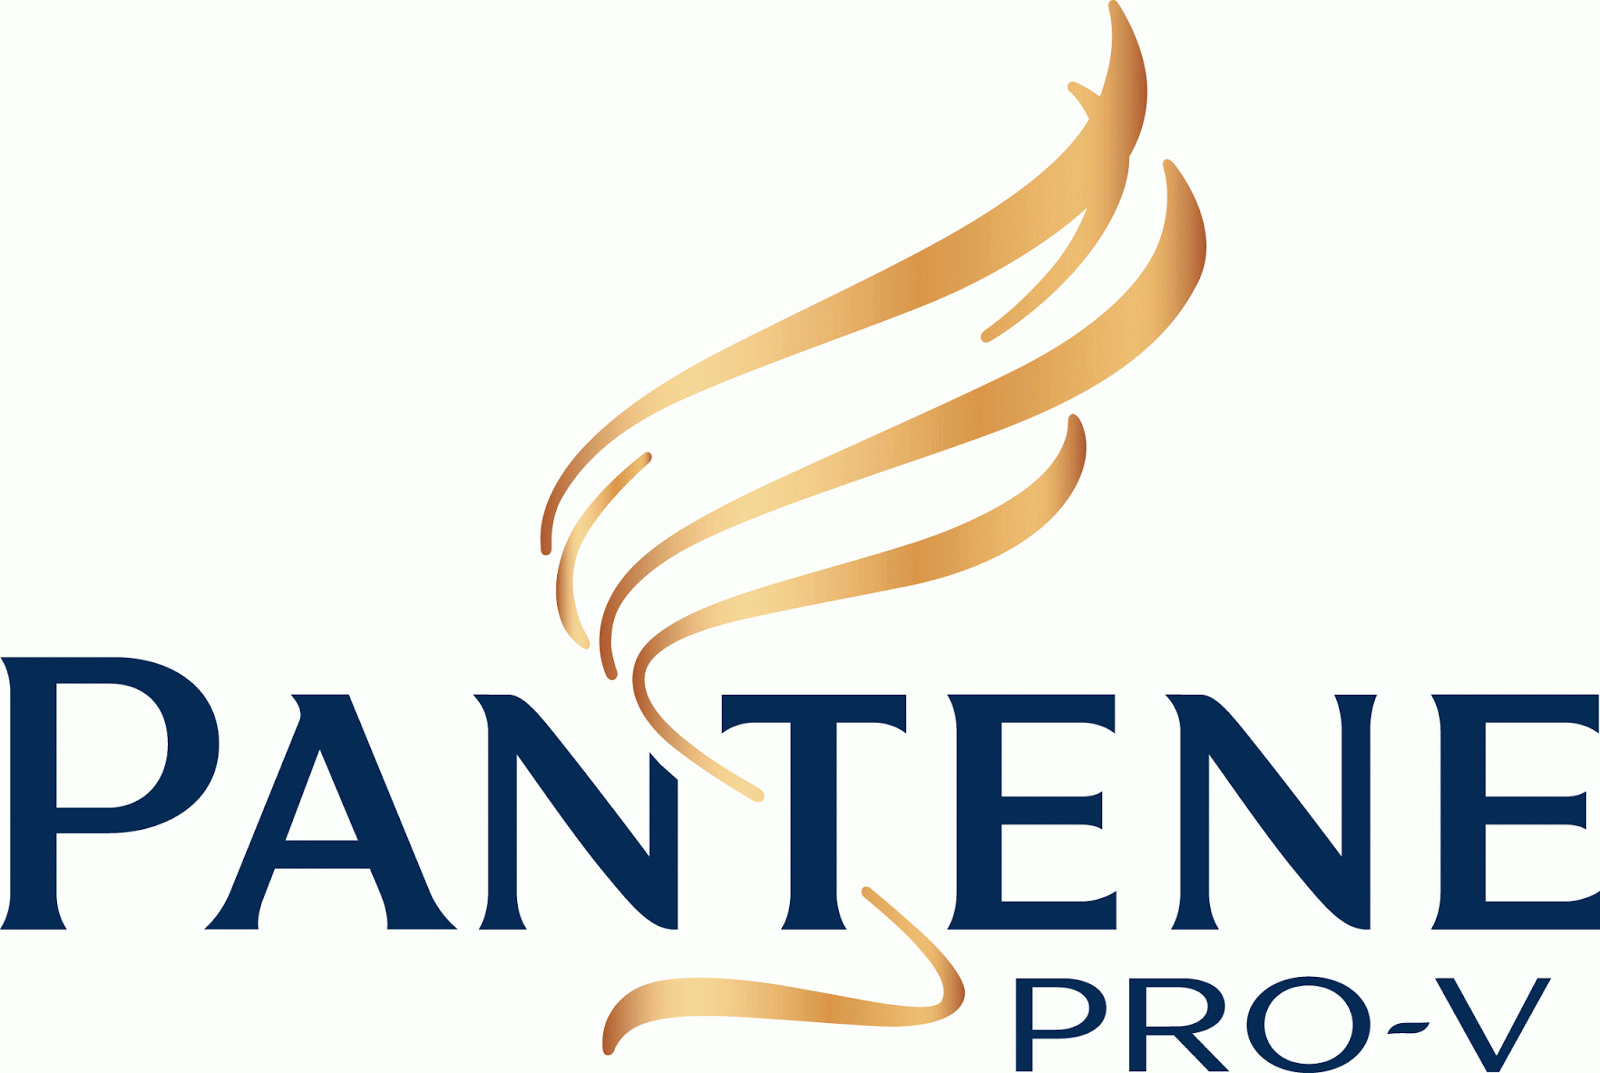 Hair Shampoo Logo - Very Popular Logo: Pantene Logo